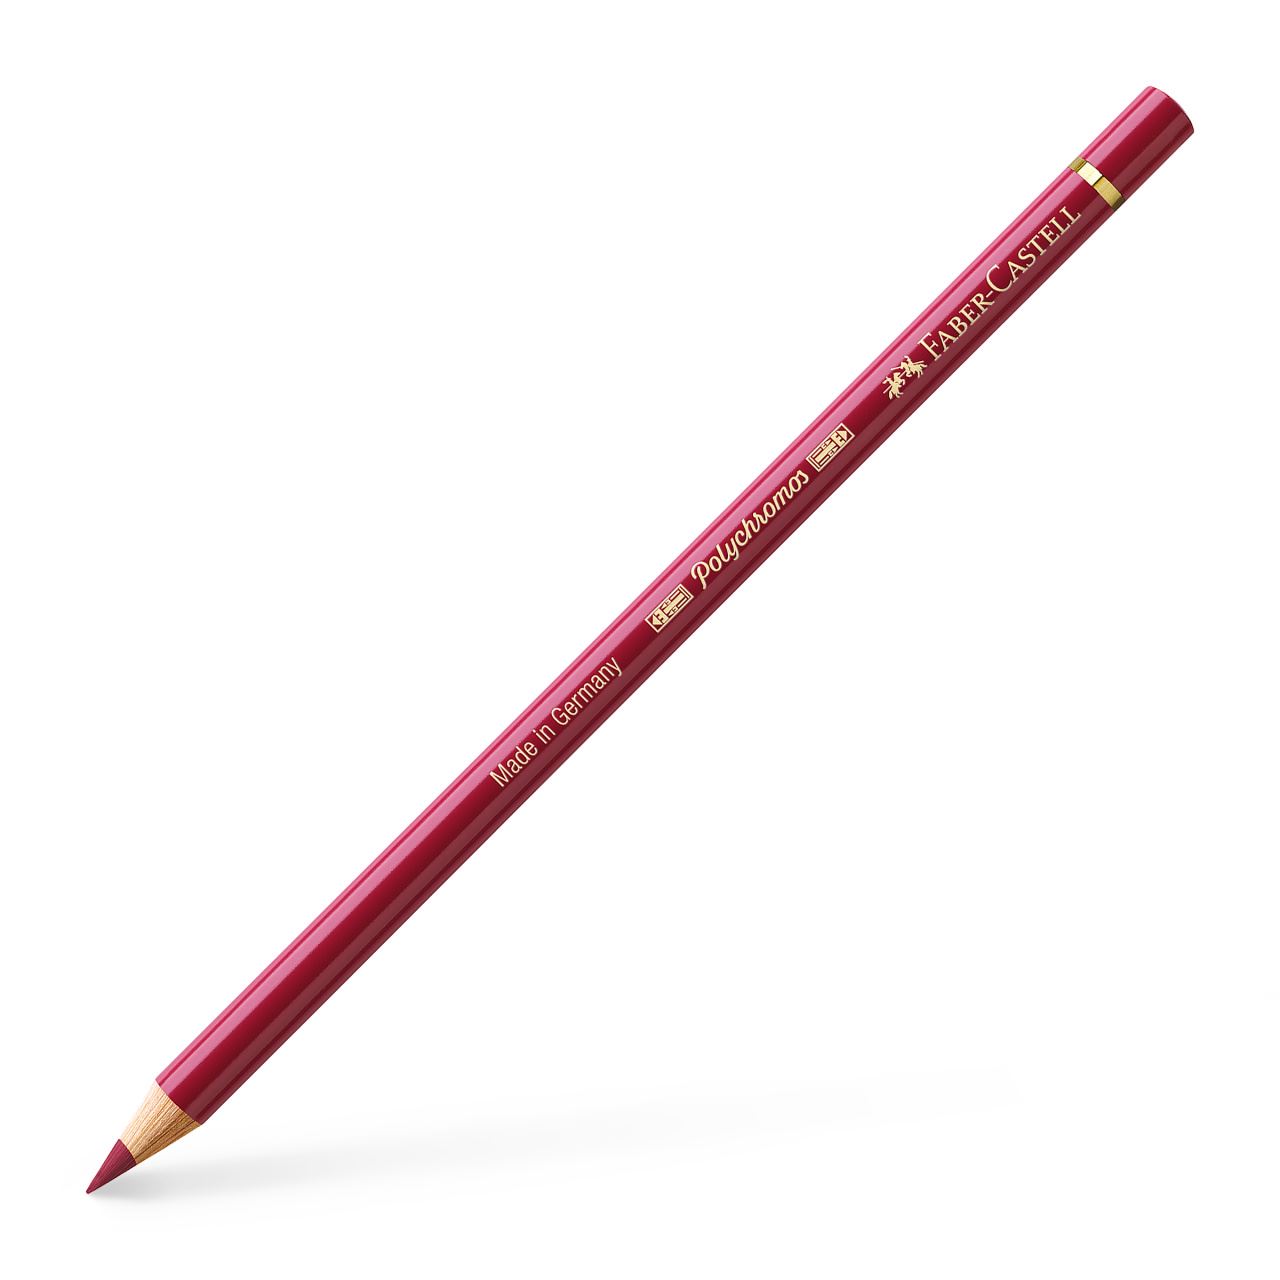 Faber-Castell - Polychromos colour pencil, 225 dark red